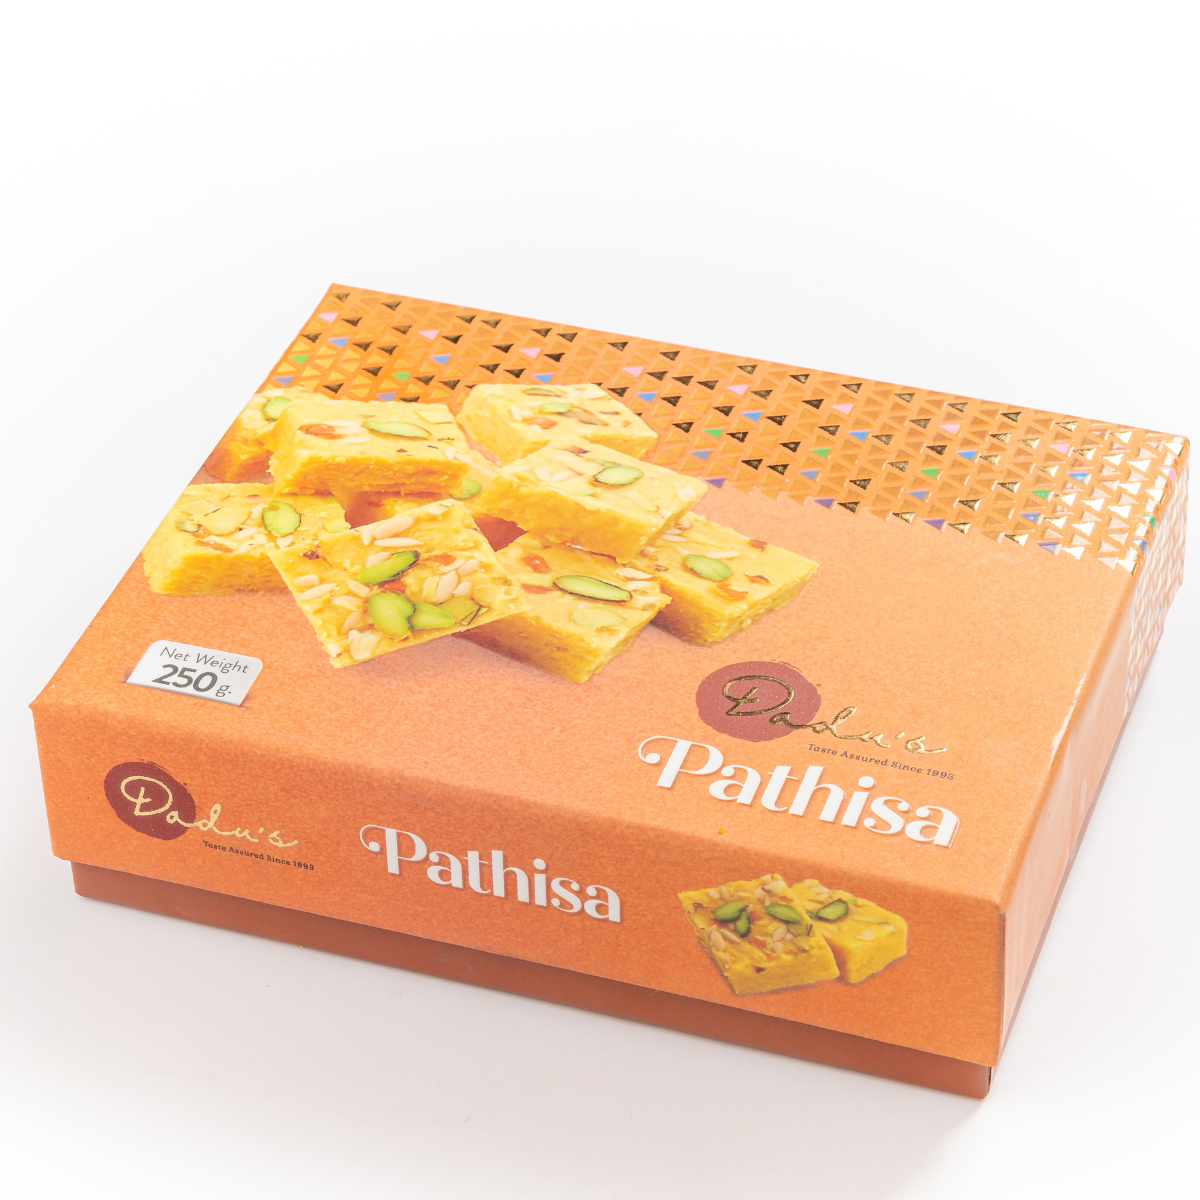 Pathisa